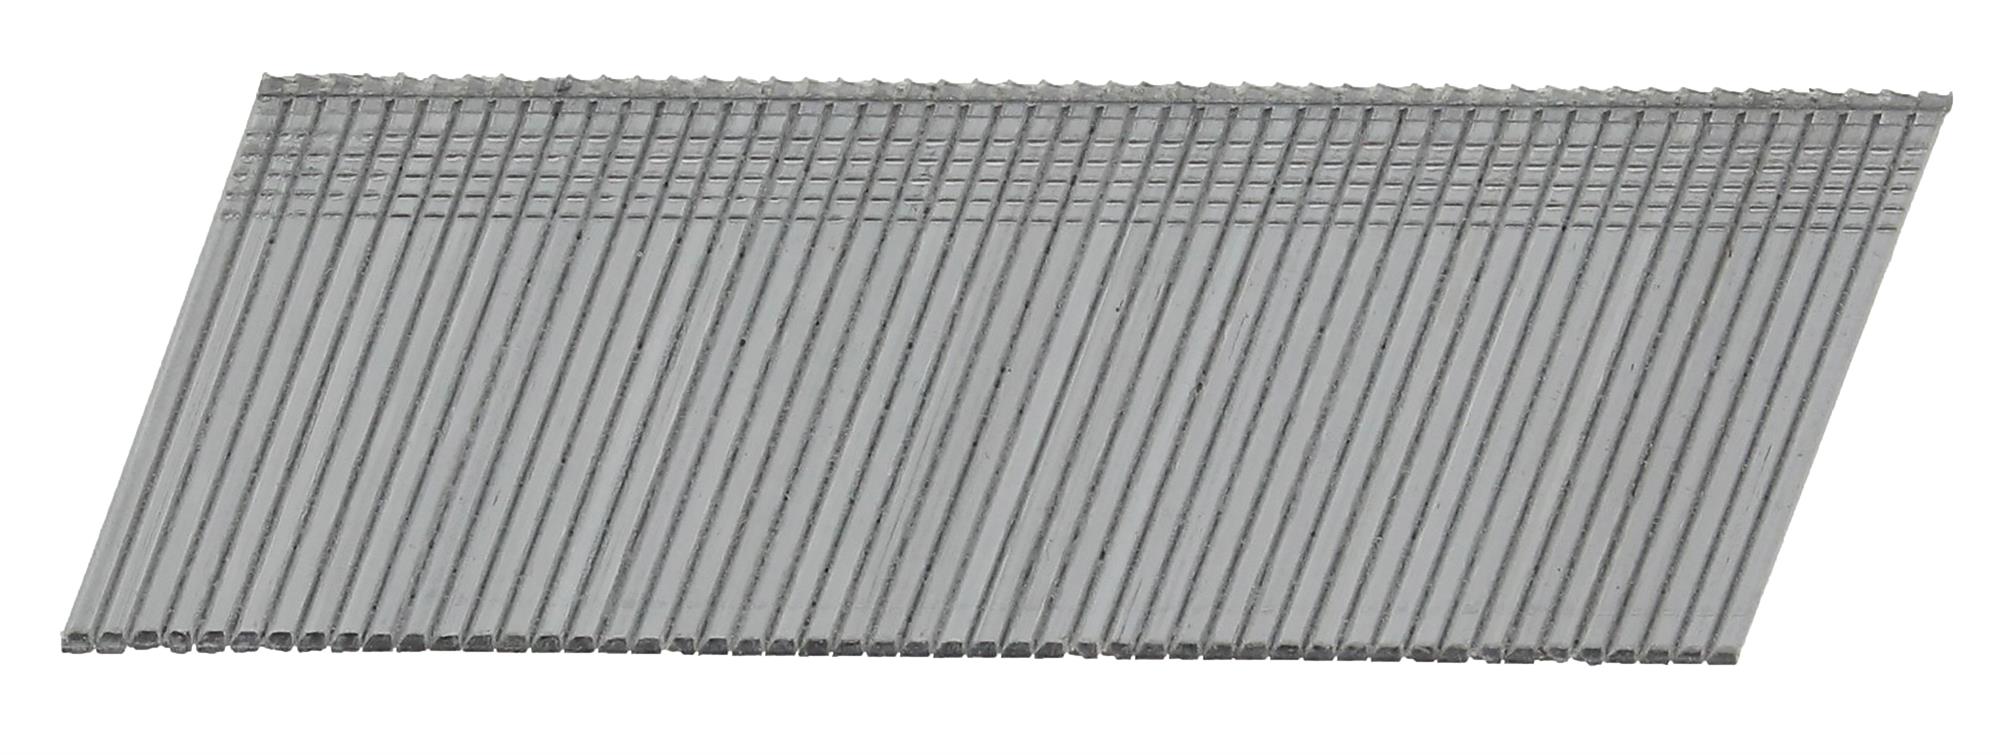 Hřebíky FeZn Paslode AF16 20° hladké 1,6×38 mm 2 000 ks